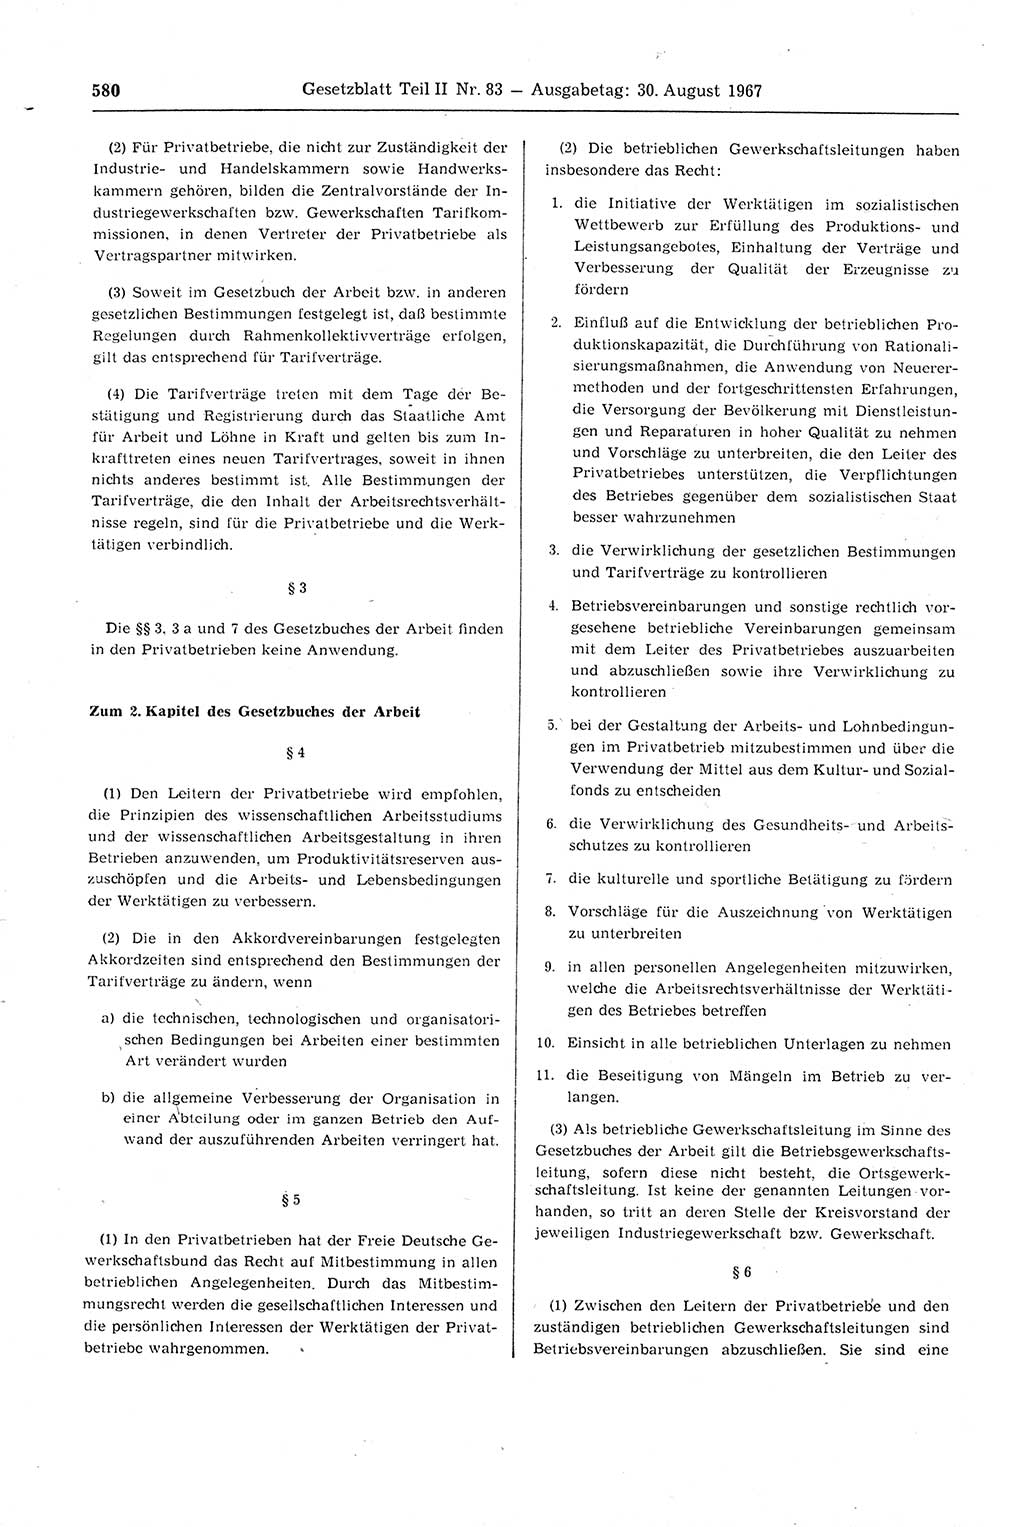 Gesetzblatt (GBl.) der Deutschen Demokratischen Republik (DDR) Teil ⅠⅠ 1967, Seite 580 (GBl. DDR ⅠⅠ 1967, S. 580)